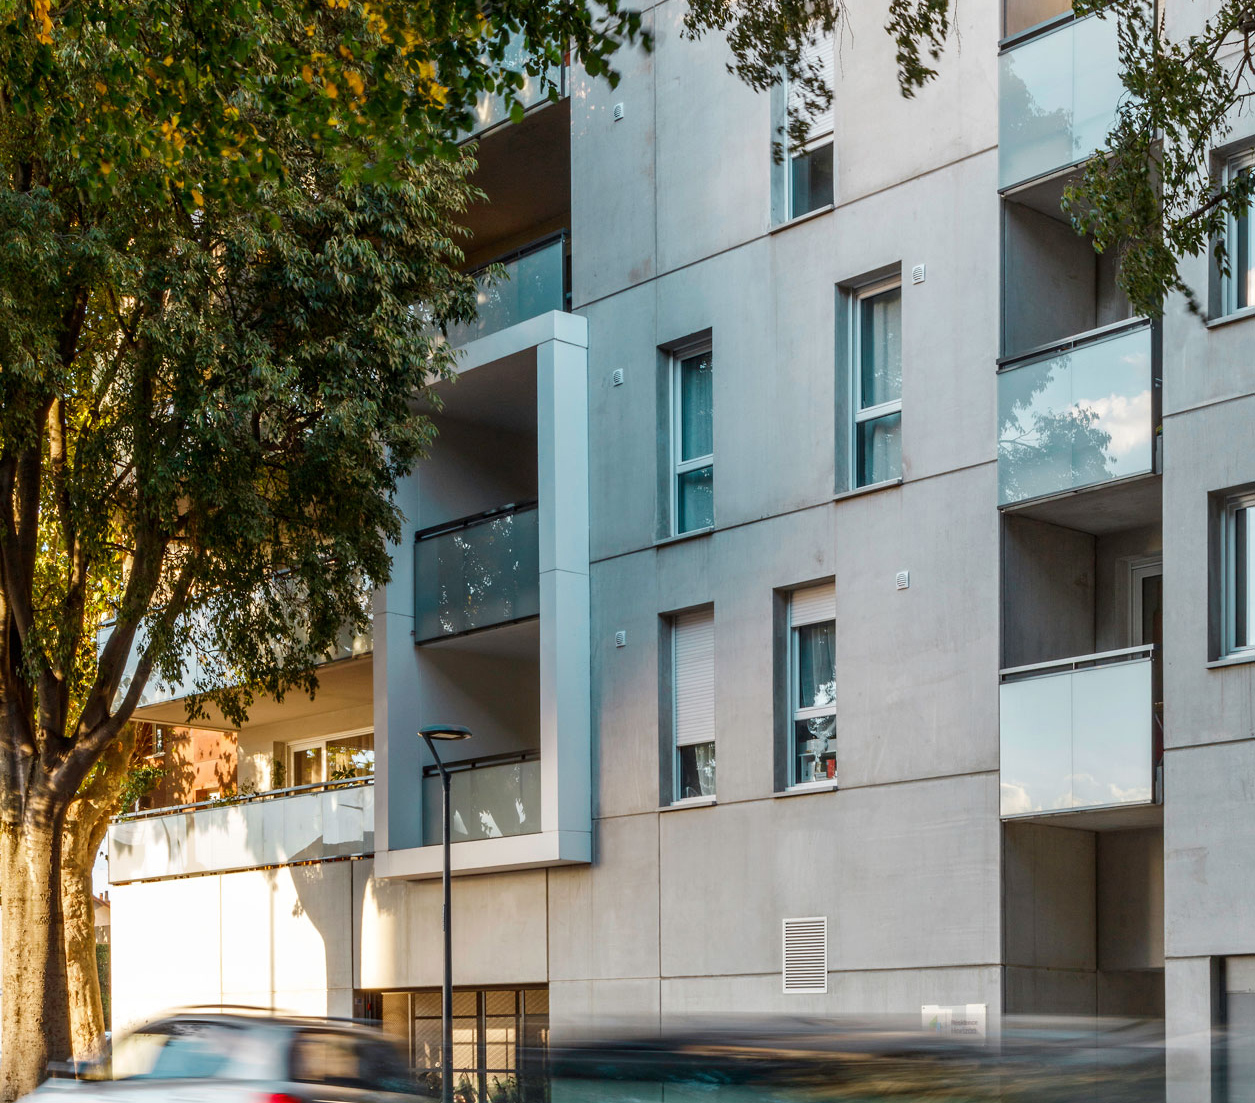 Résidence Horizon - HONORE SERRES - TOULOUSE - MR3A Architecture et urbanisme